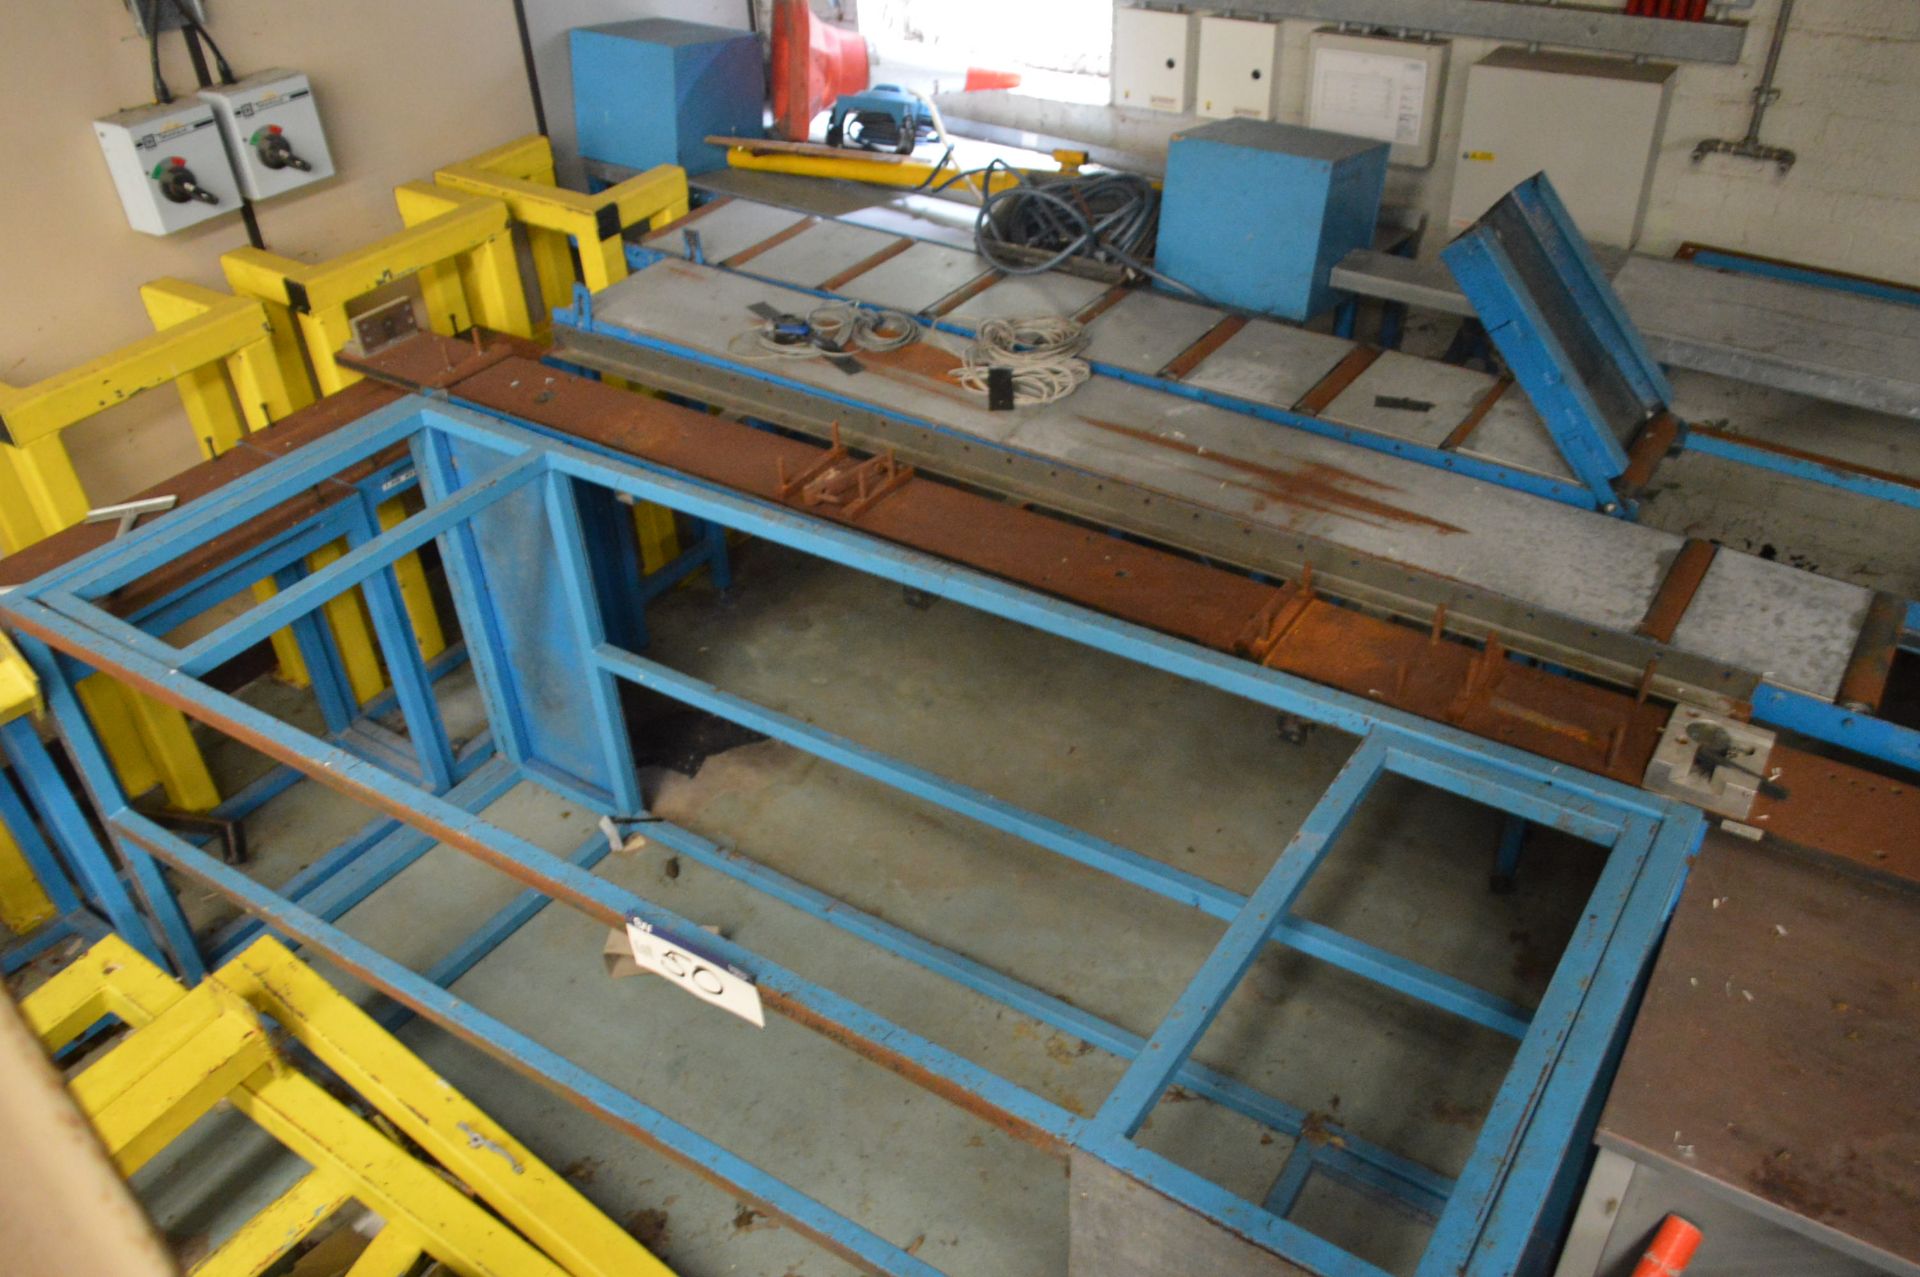 Roller Conveyor, Fabricated Steel Stands & Equipment, in corner of room - Image 2 of 2